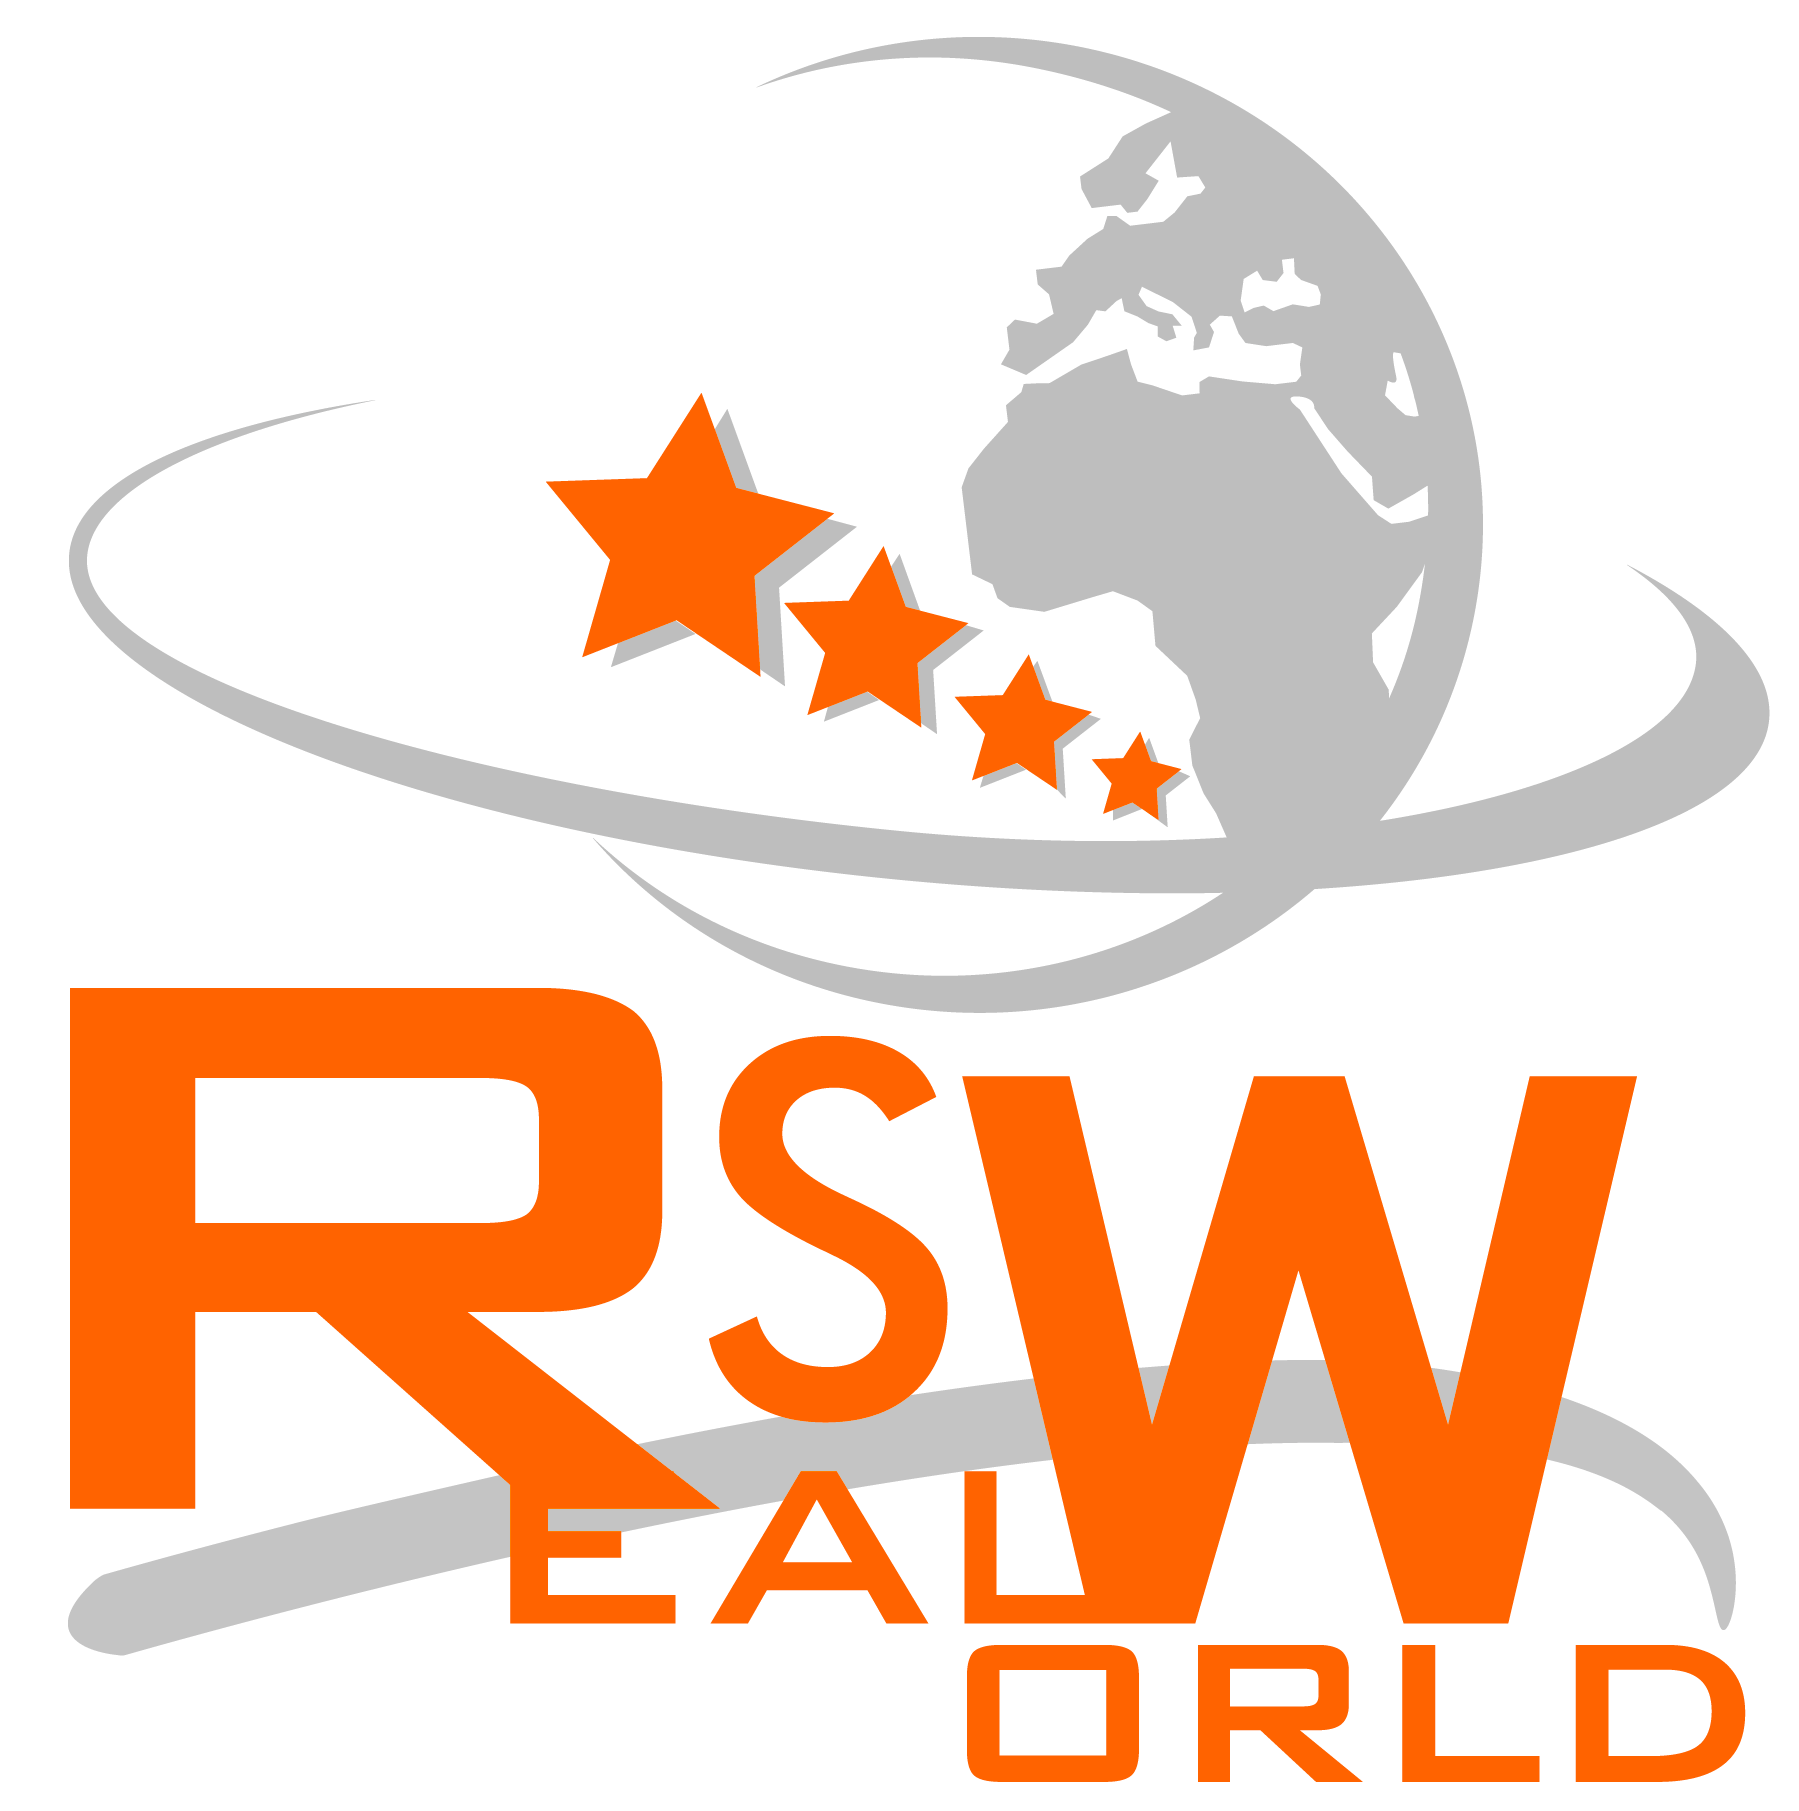 Всемирная корпорация RealSWorld